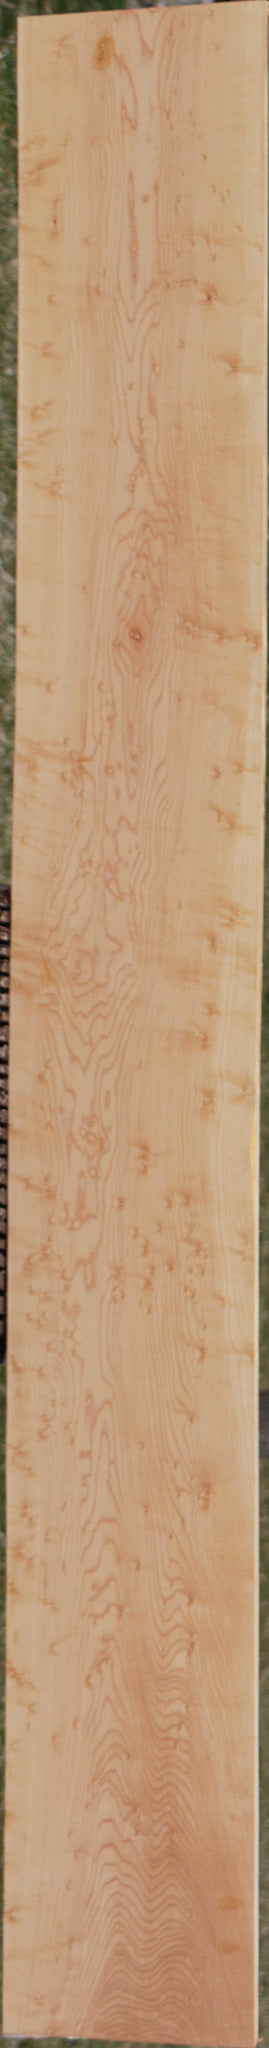 Figured Maple Lumber